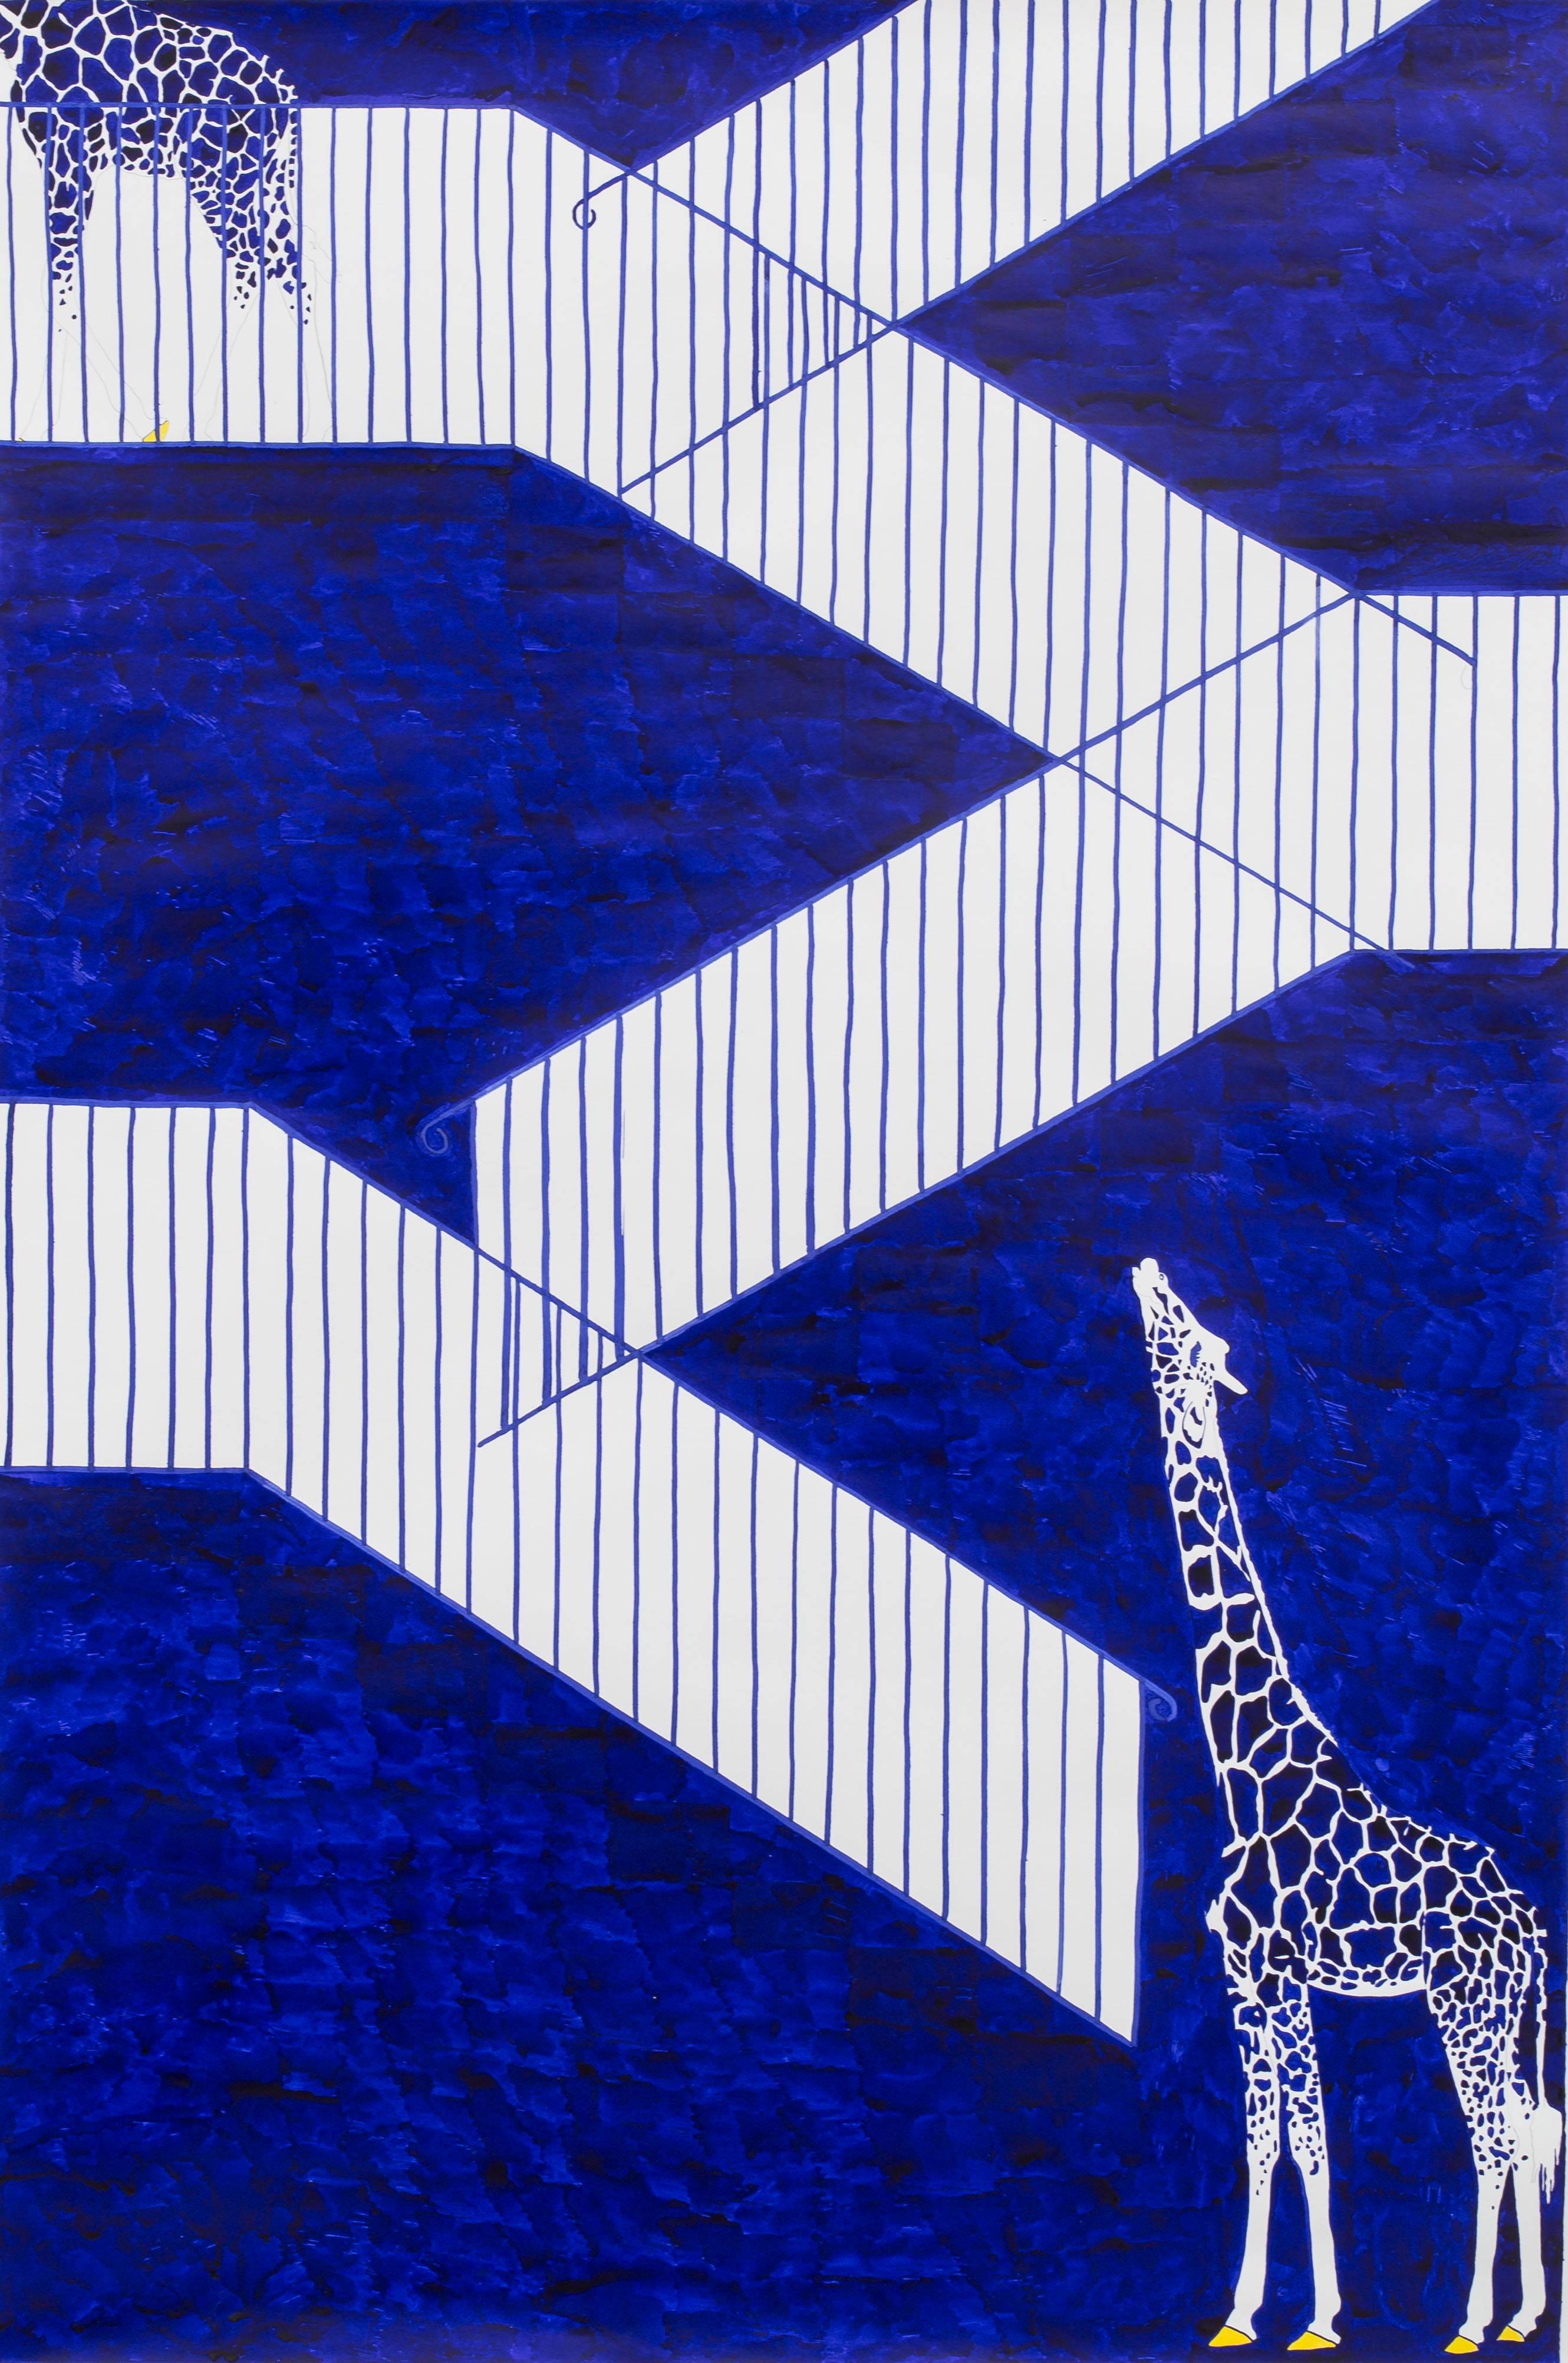 Ivo Morrison Animal Painting - Das Treppenhaus. Eine tragödie in drei teilen - Giraffes on the stairs